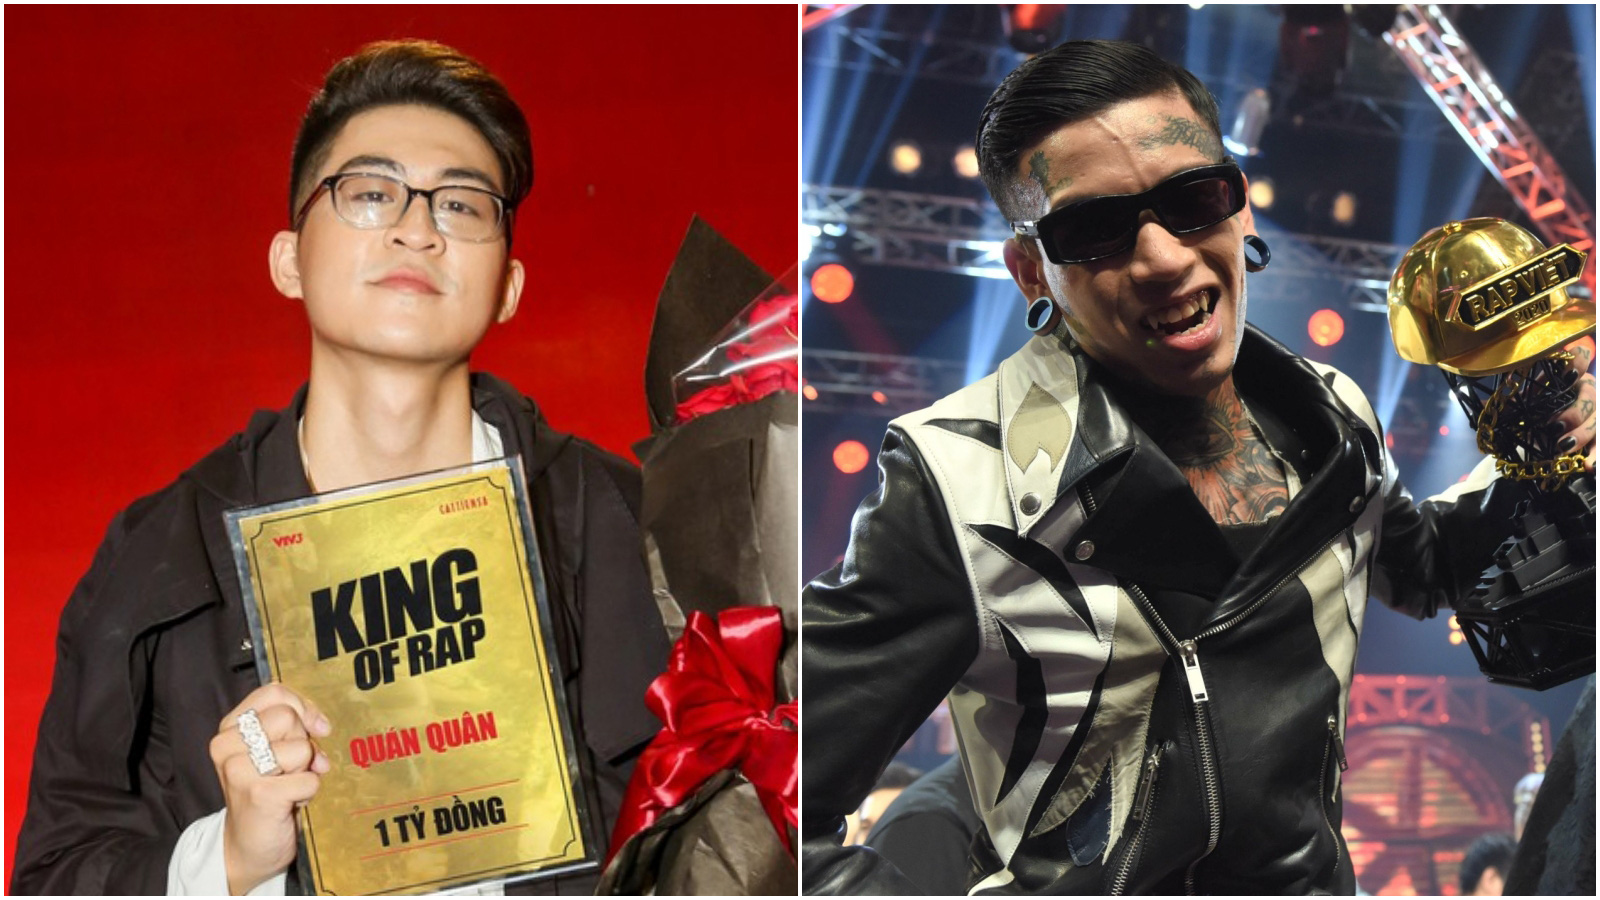 2 quán quân mới của Rap Việt và King of Rap gây tranh cãi - Ảnh 1.